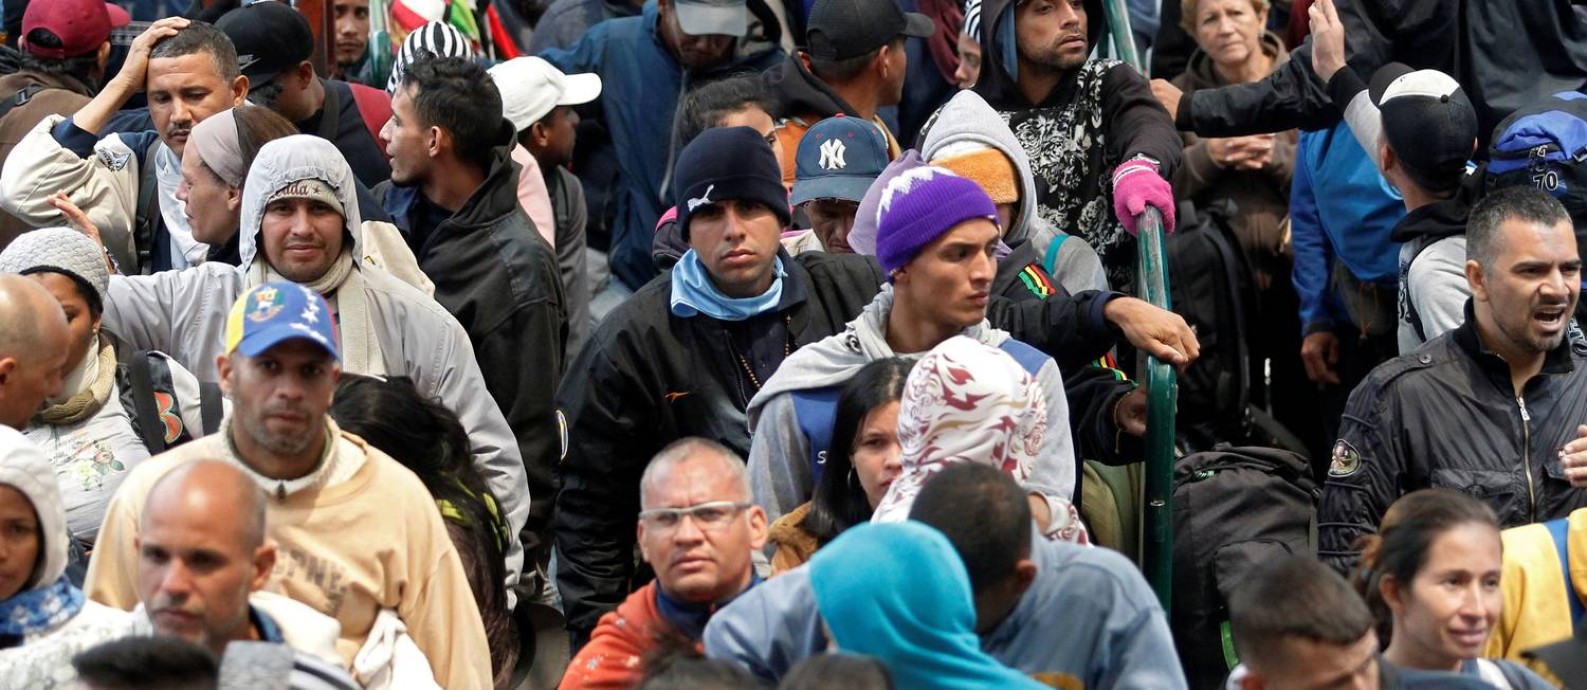 Venezuelanos fazem fila para registrar sua saída da Colômbia e entrar no Equador Foto: STRINGER / REUTERS